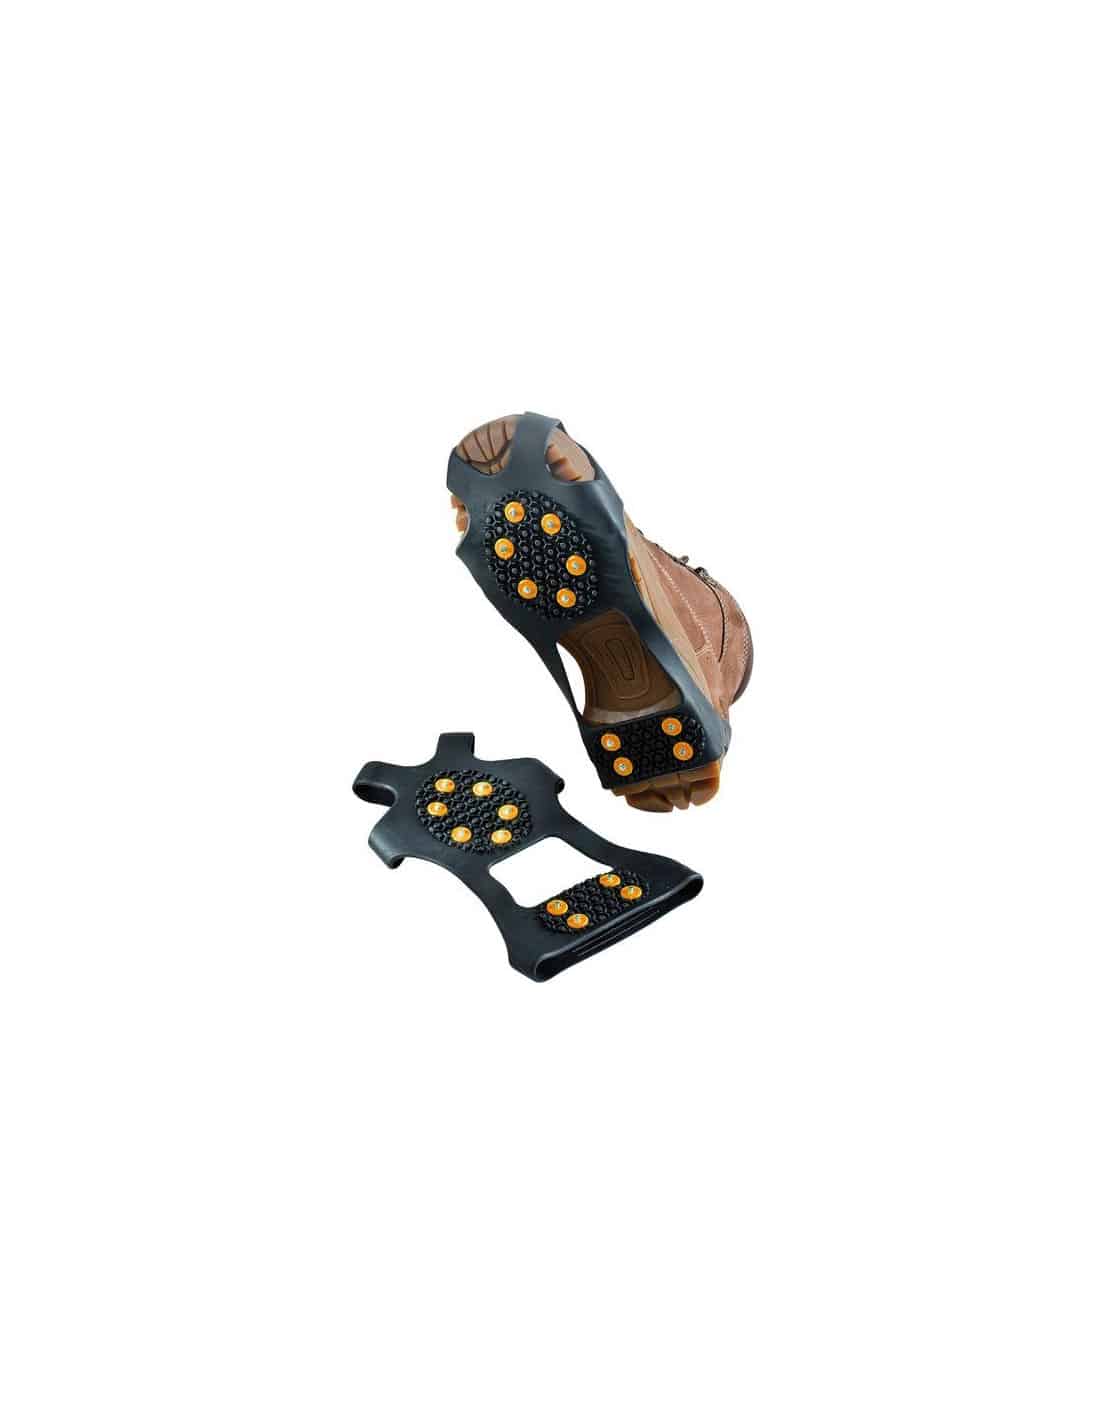 JLF Pro - Crampons anti-verglas (réf 0543) pour chaussures homme